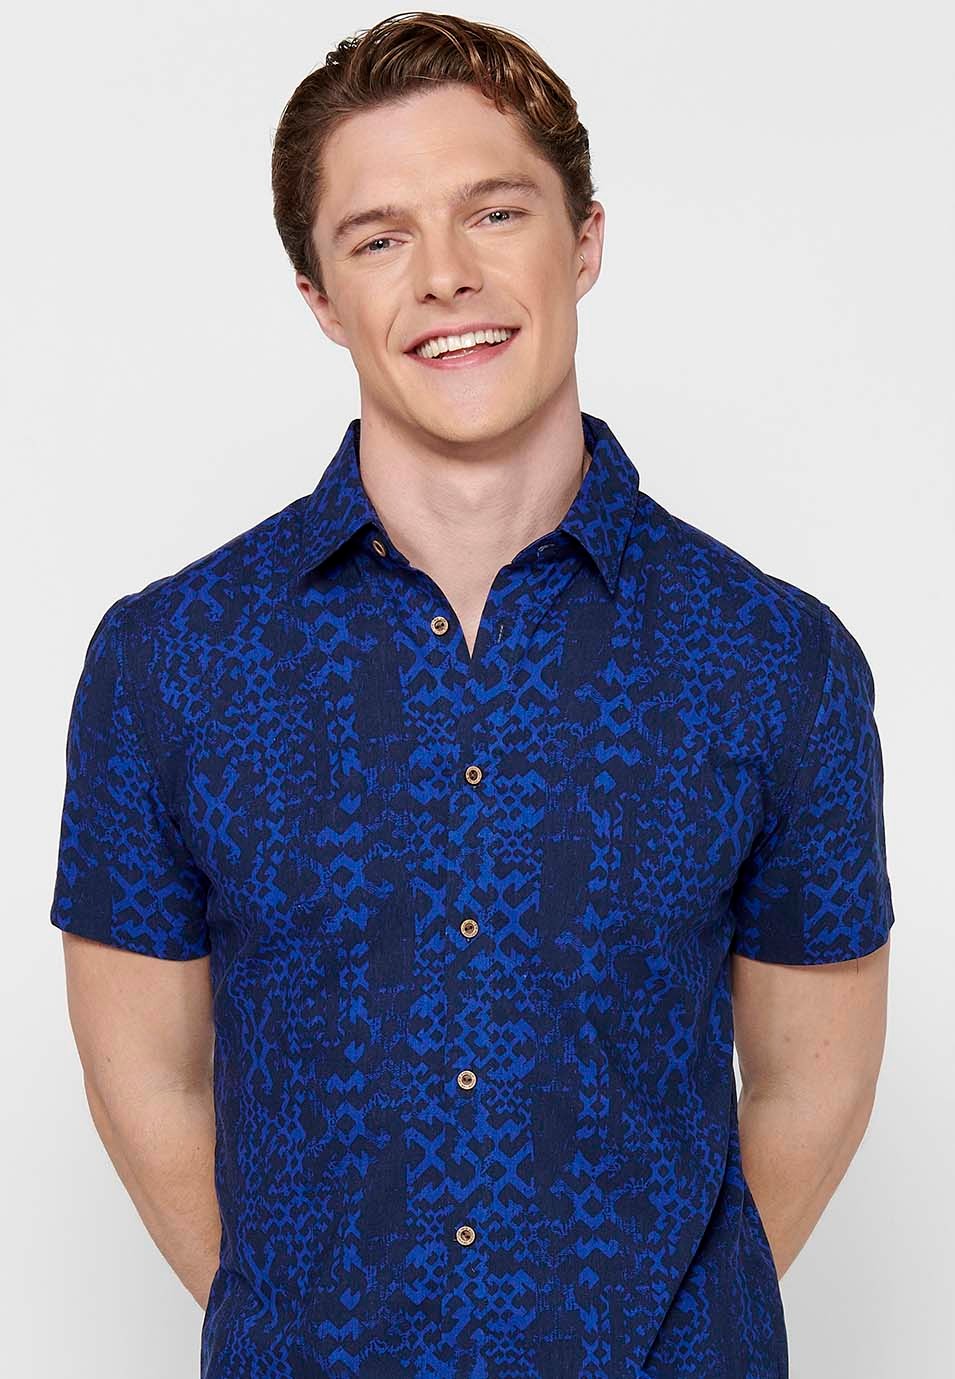 Blaues, kurzärmliges, bedrucktes Herrenhemd mit Knopfverschluss vorne